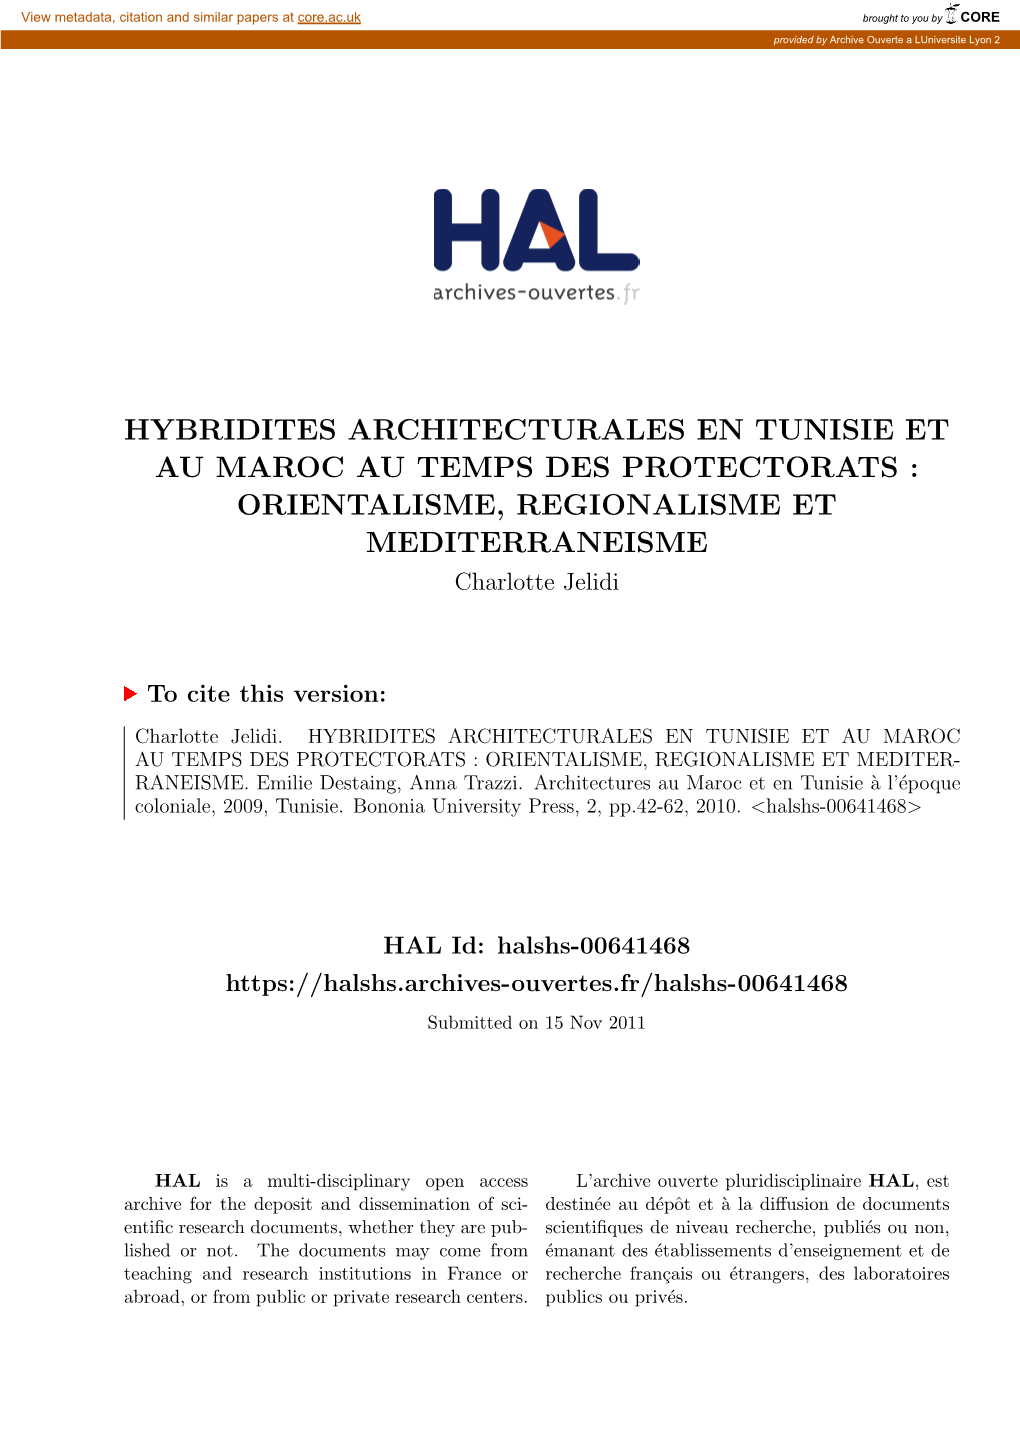 HYBRIDITES ARCHITECTURALES EN TUNISIE ET AU MAROC AU TEMPS DES PROTECTORATS : ORIENTALISME, REGIONALISME ET MEDITERRANEISME Charlotte Jelidi